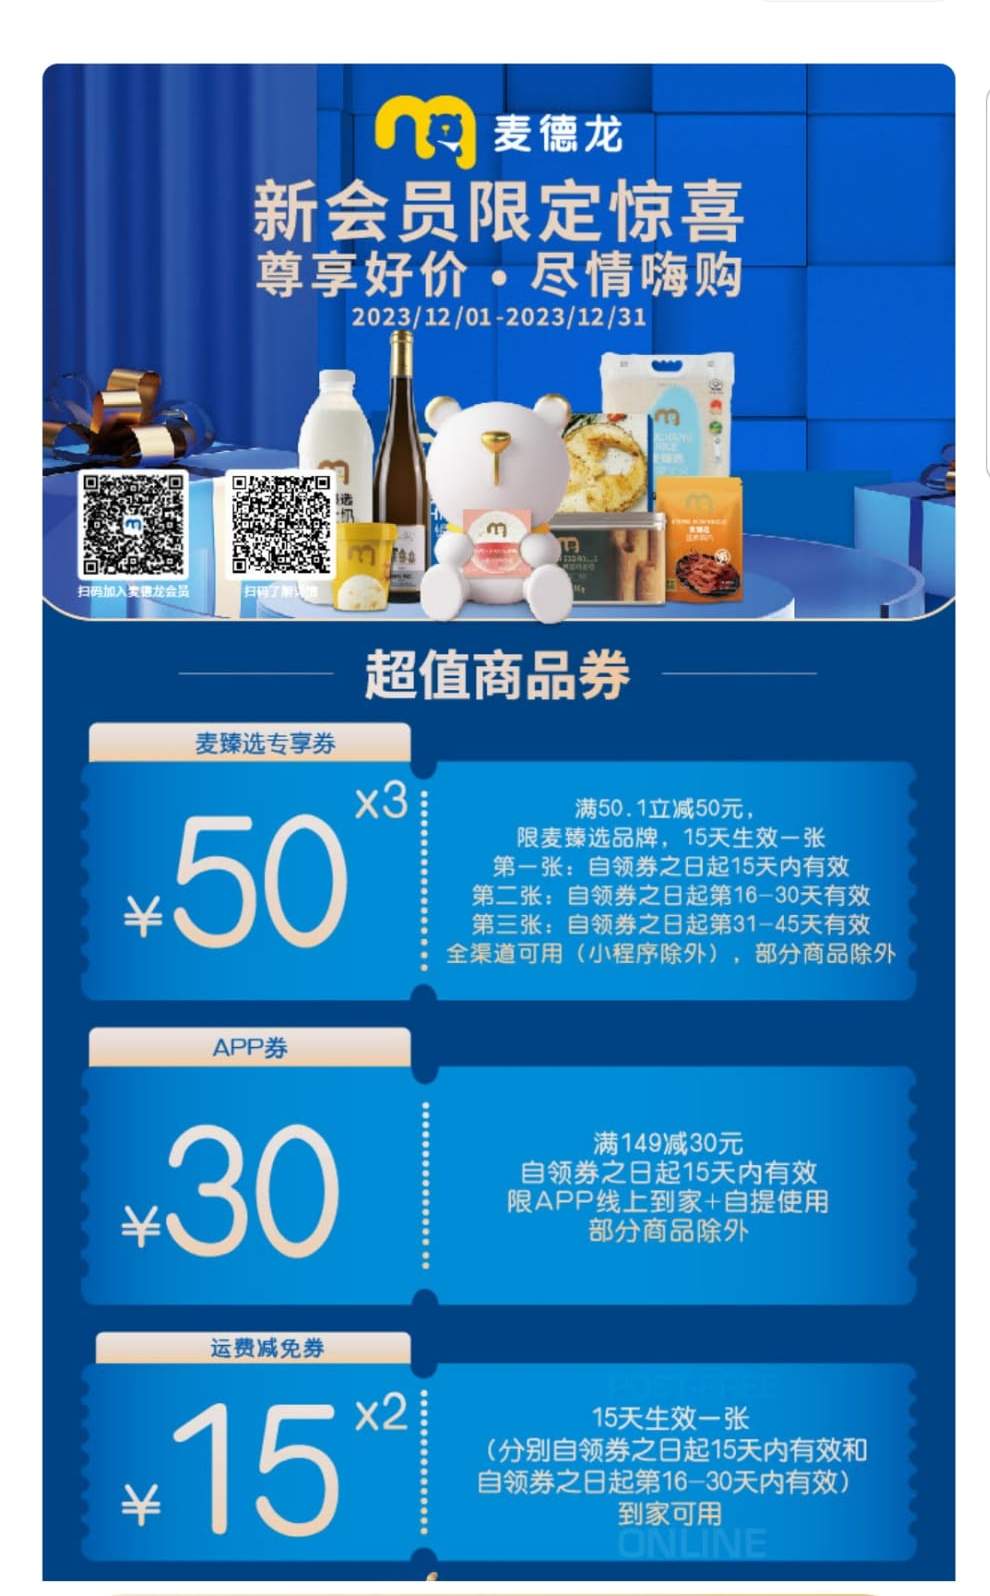 深圳麥德龍超市新會員優惠，購物滿指定金額可獲贈超值商品券。